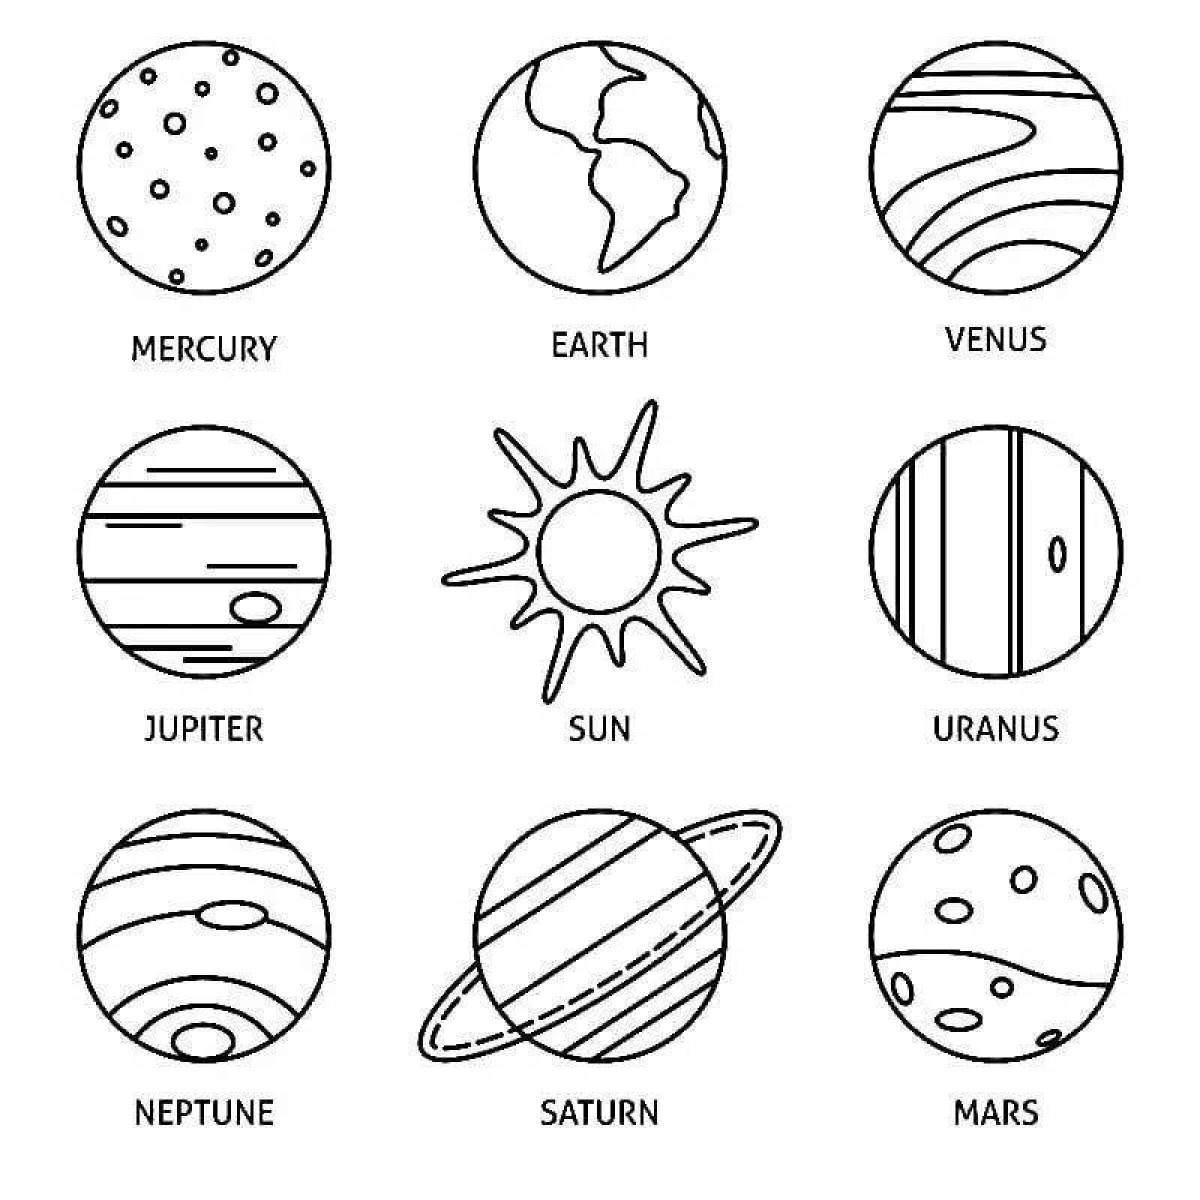 Изящная раскраска планет солнечной системы в порядке от солнца с именами